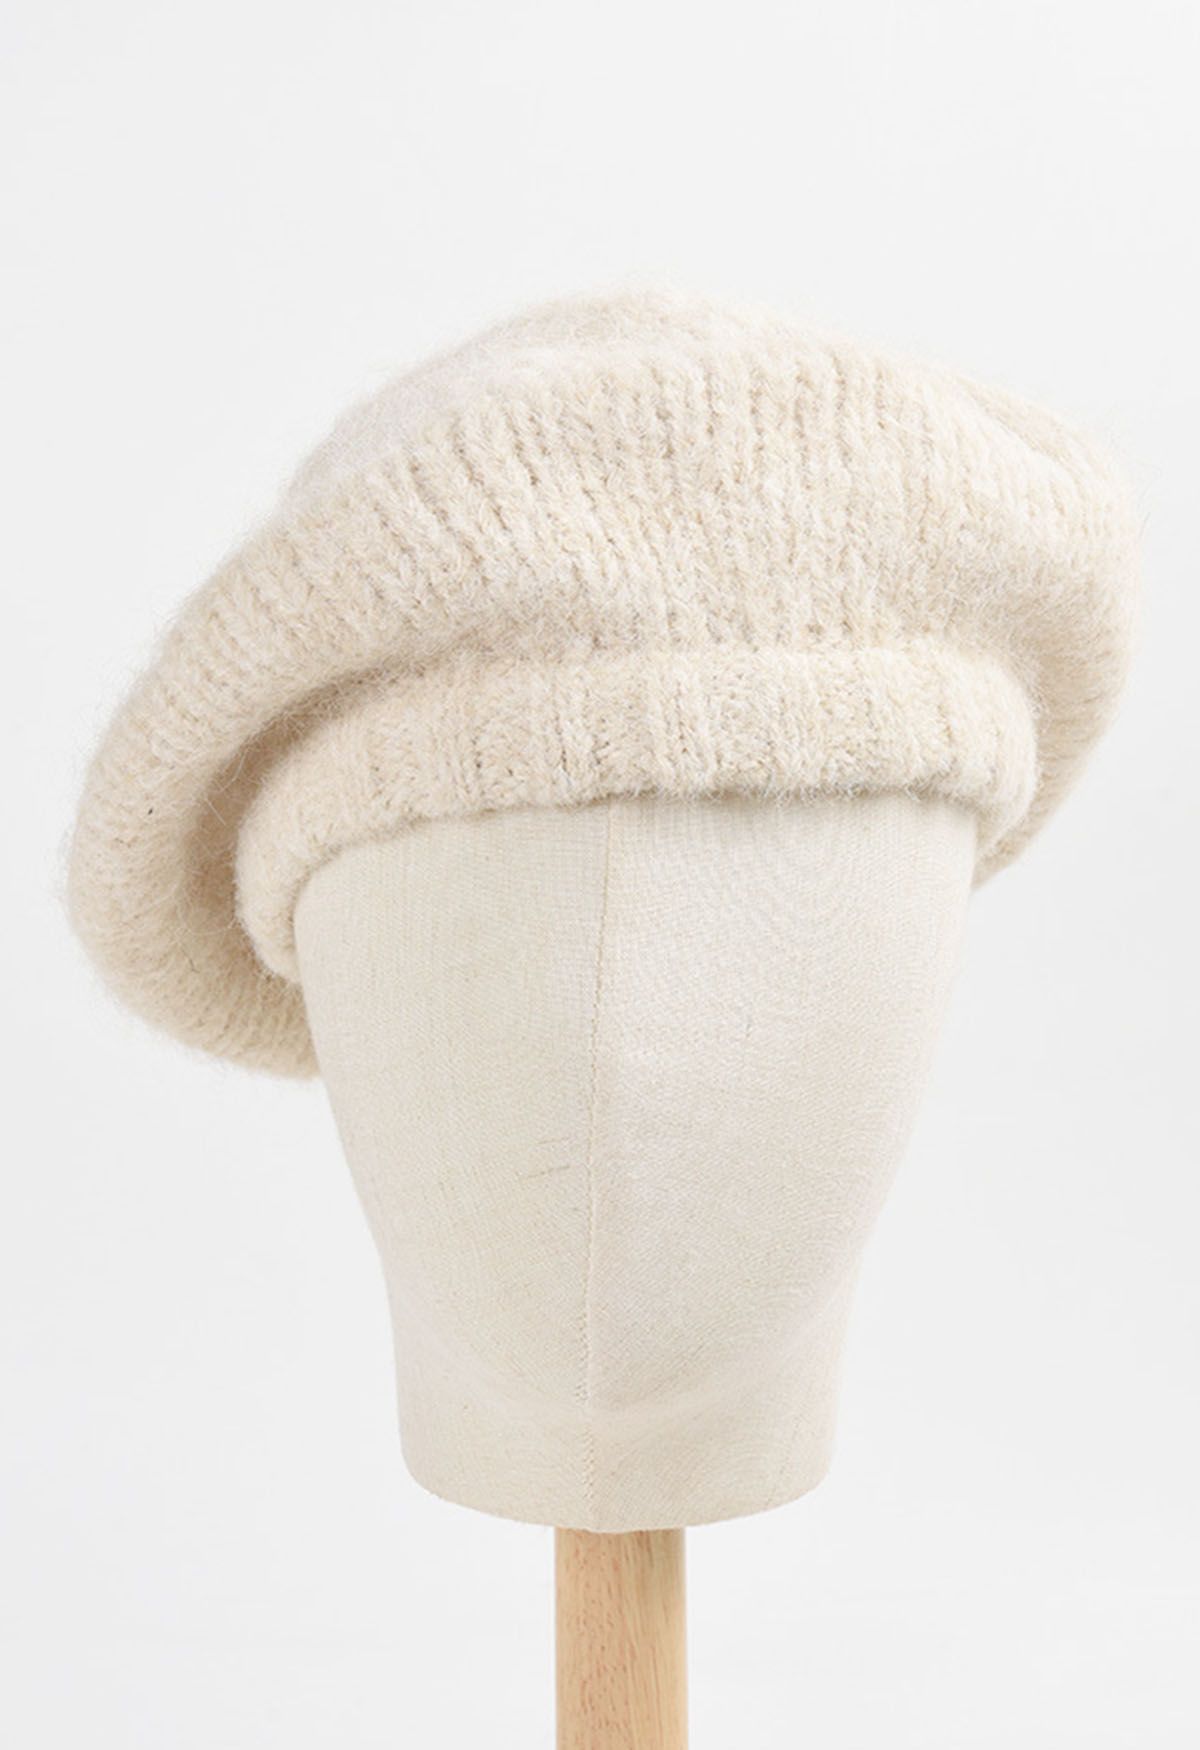 قبعة بيريه من الصوف المخلوط باللون الكريمي